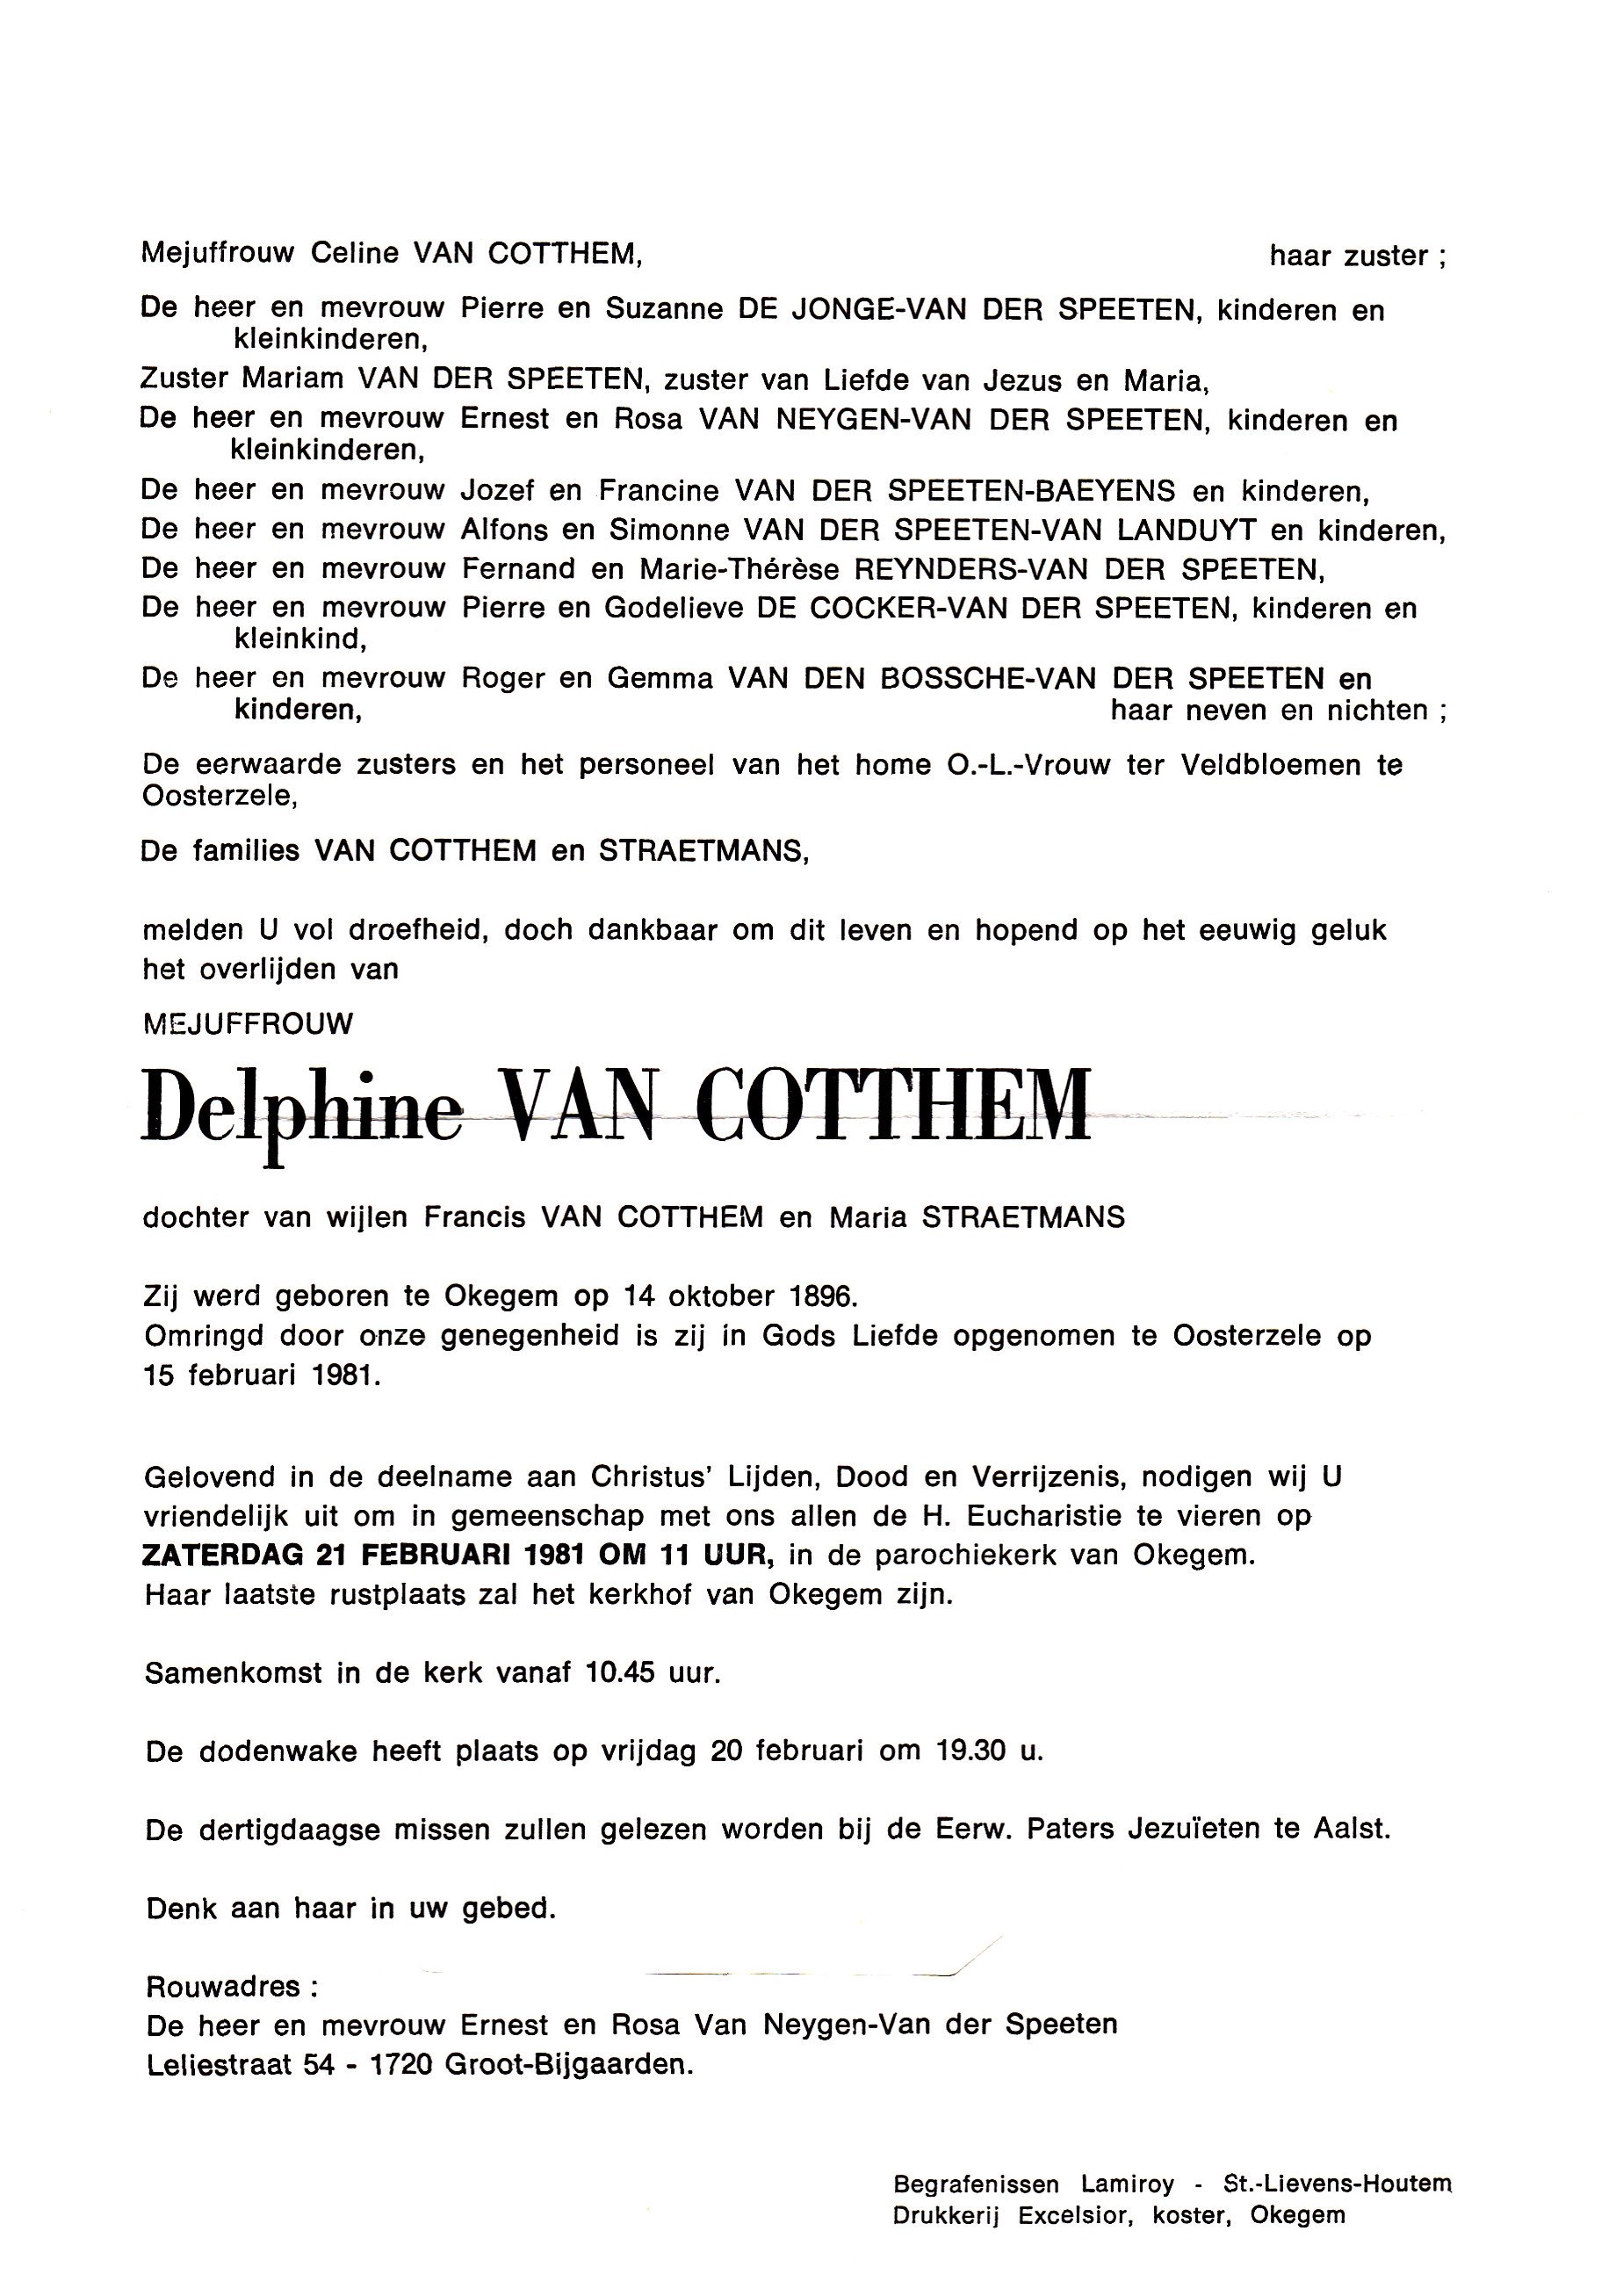 Van Cotthem Delphine  